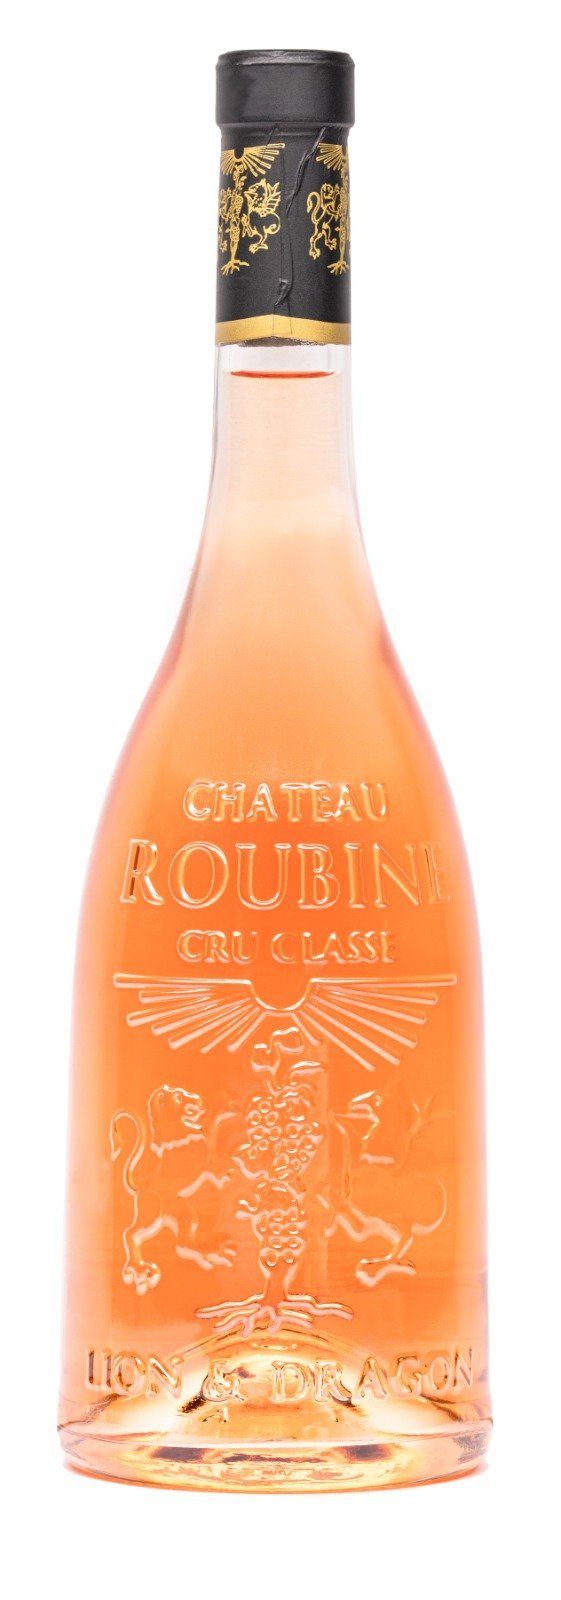 Château Roubine - Lion et Dragon vinesandterroirs 